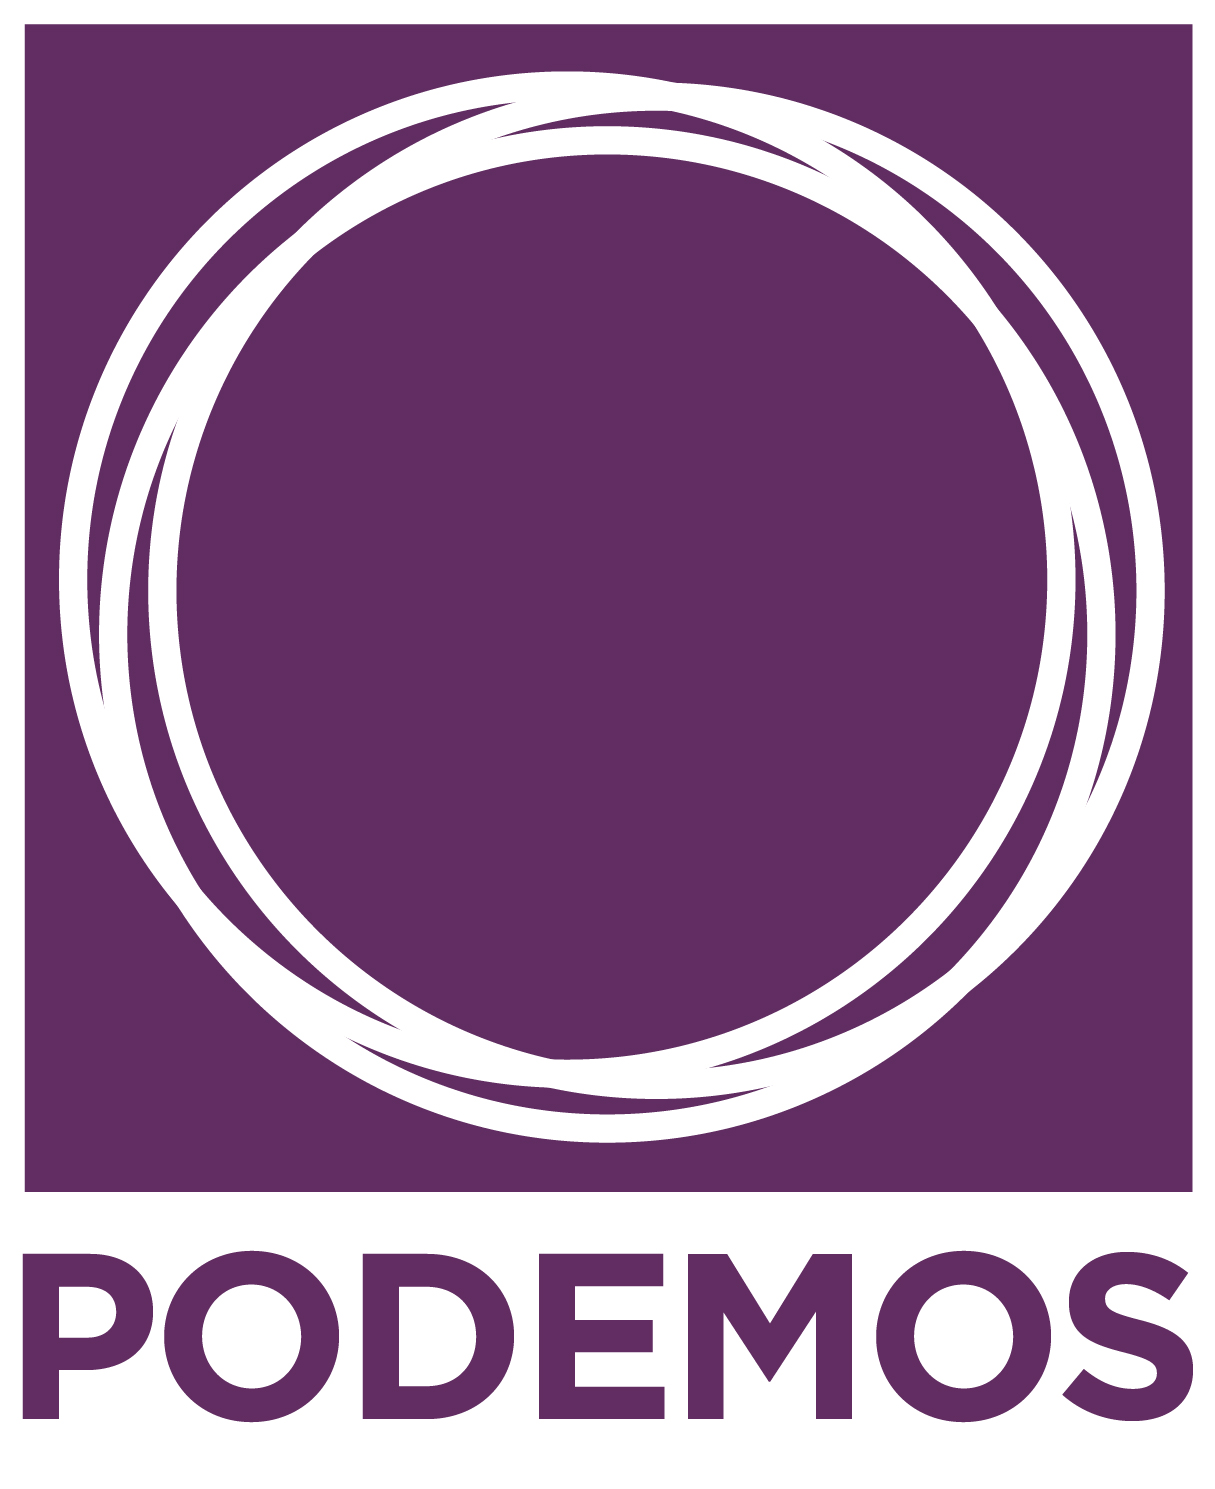 Výzva jménem Podemos